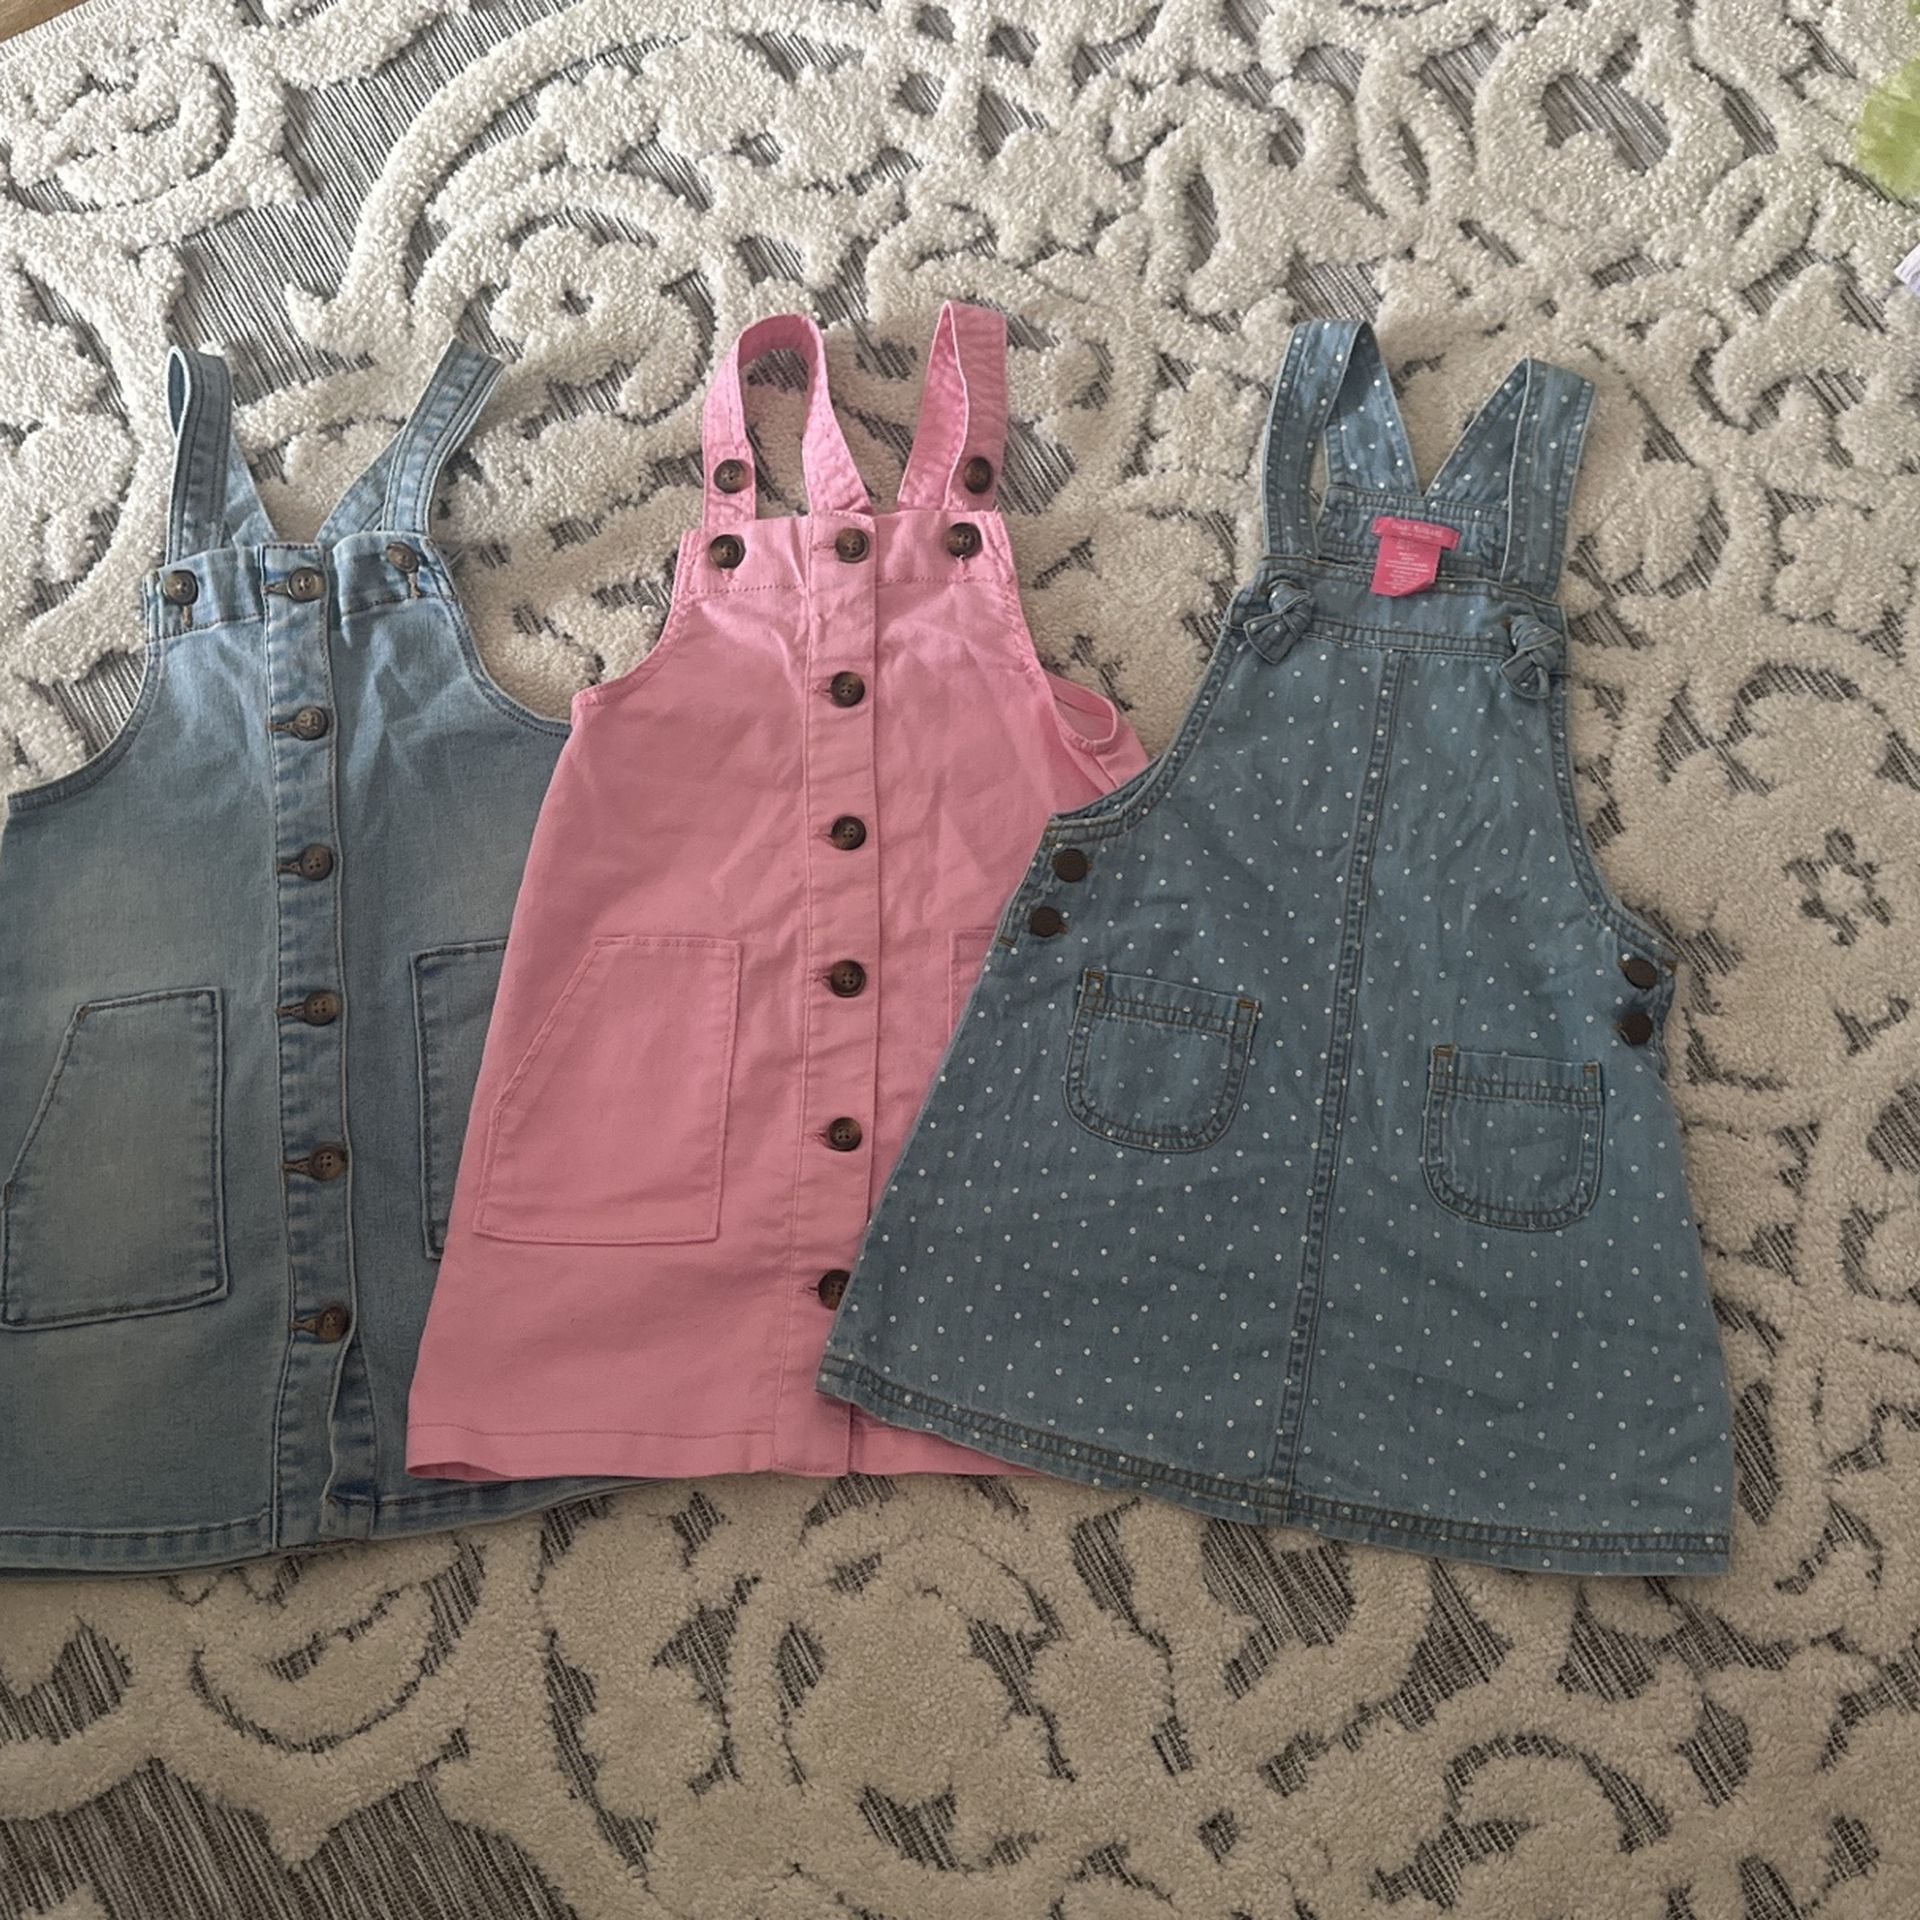 Little Girls Overall Dresses 